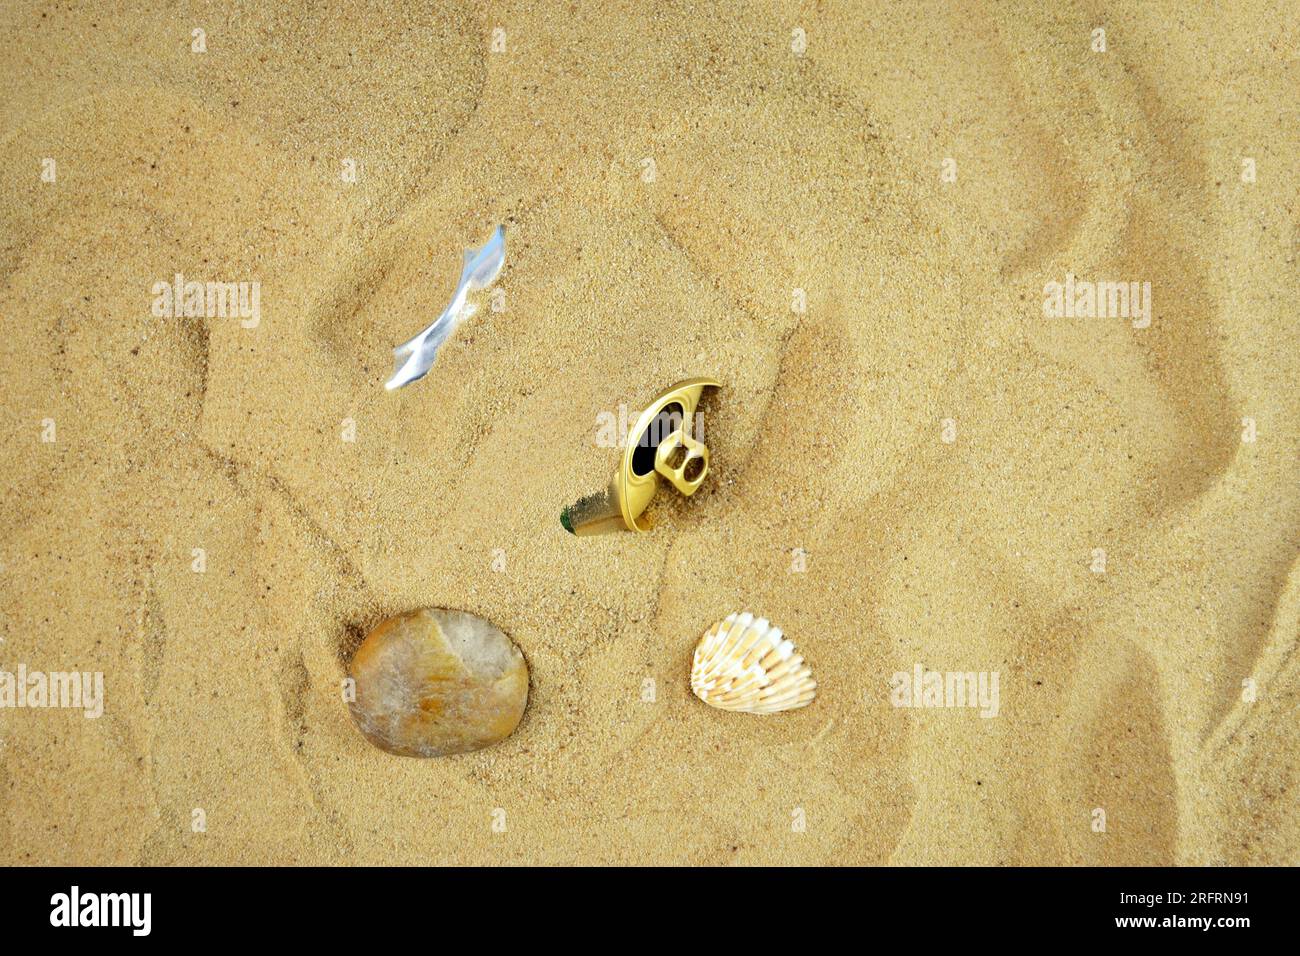 Eine leere Dose eines Getränks wurde von Besuchern am Strand zurückgelassen und mit Sand begraben Stockfoto